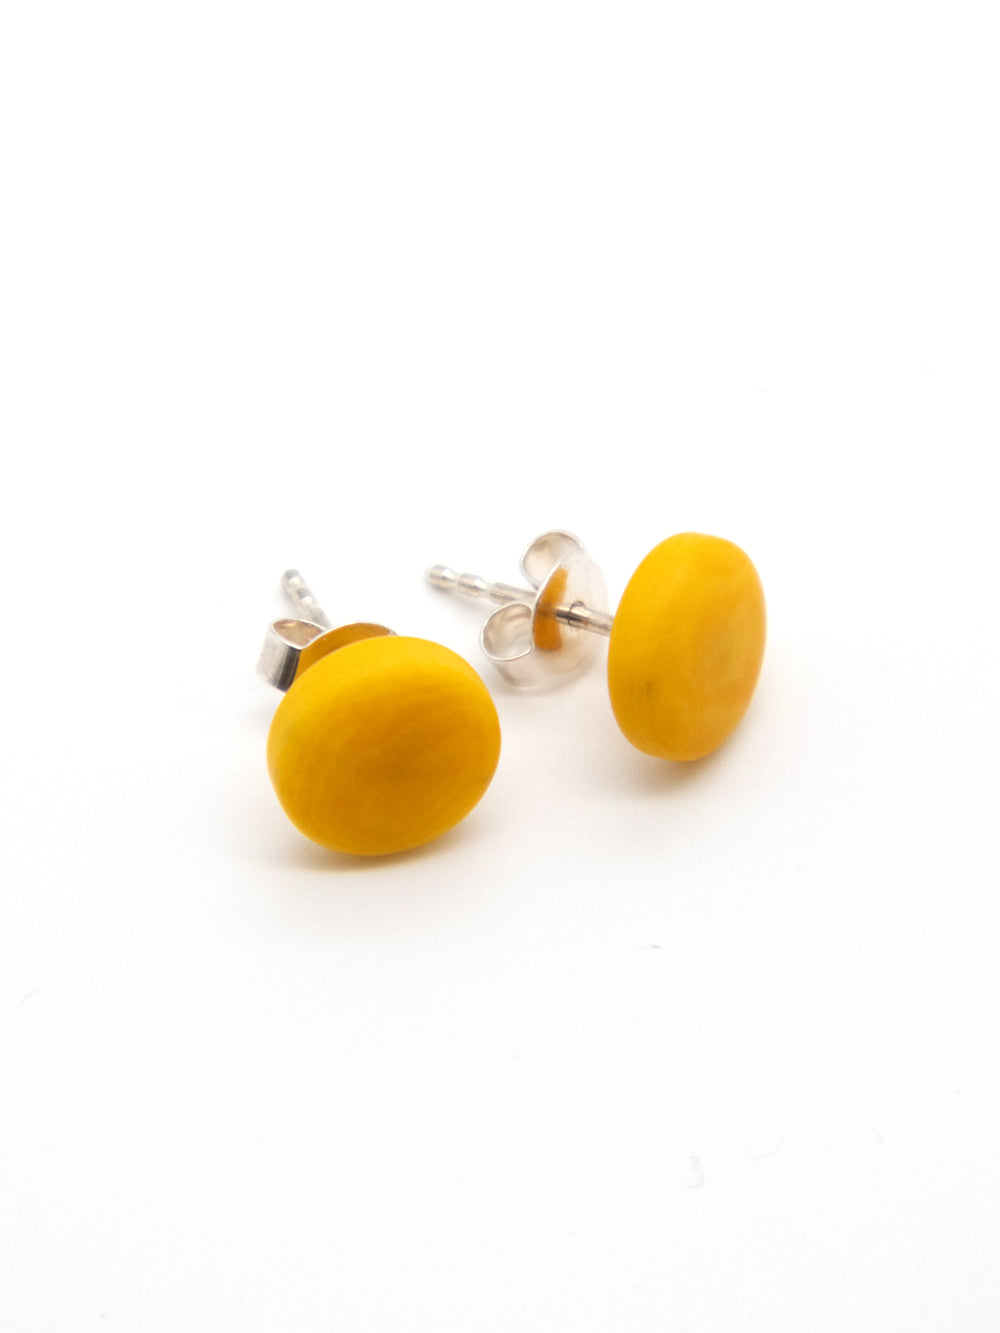 Stud earrings Topo yellow - LaTagua nut earrings silver